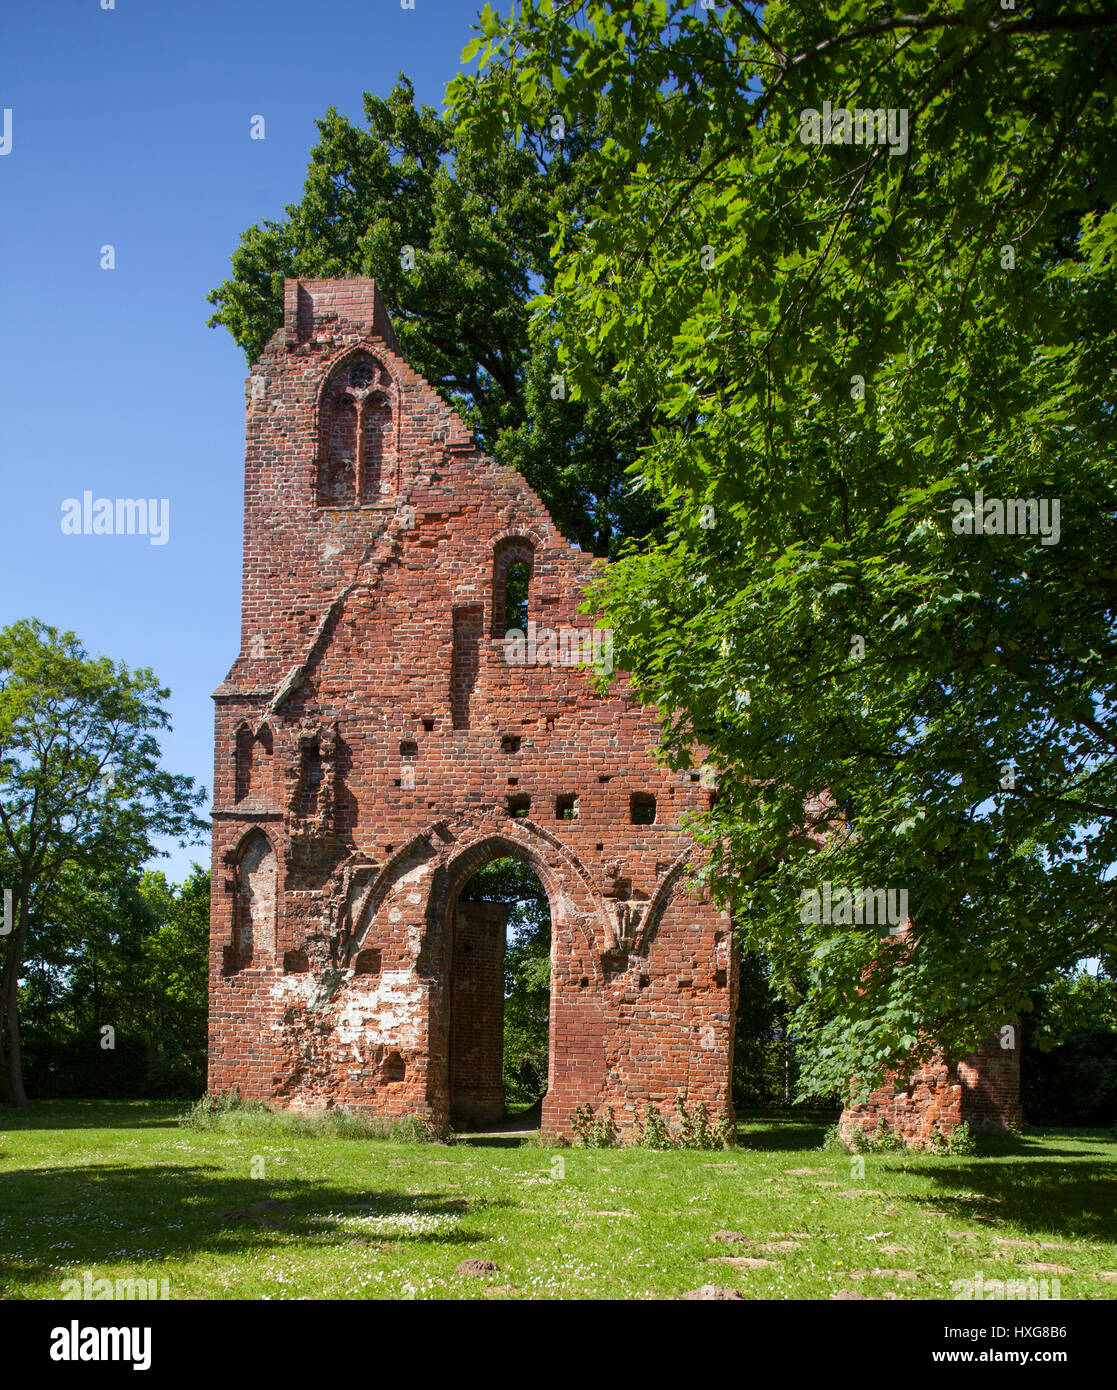 Klosterruine Eldena, Greifswald,  Mecklenburg-Vorpommern, Deutschland, Europa   I  Ruins of the Eldena Monastery, Greifswald, Mecklenburg-Vorpommern,  Stock Photo